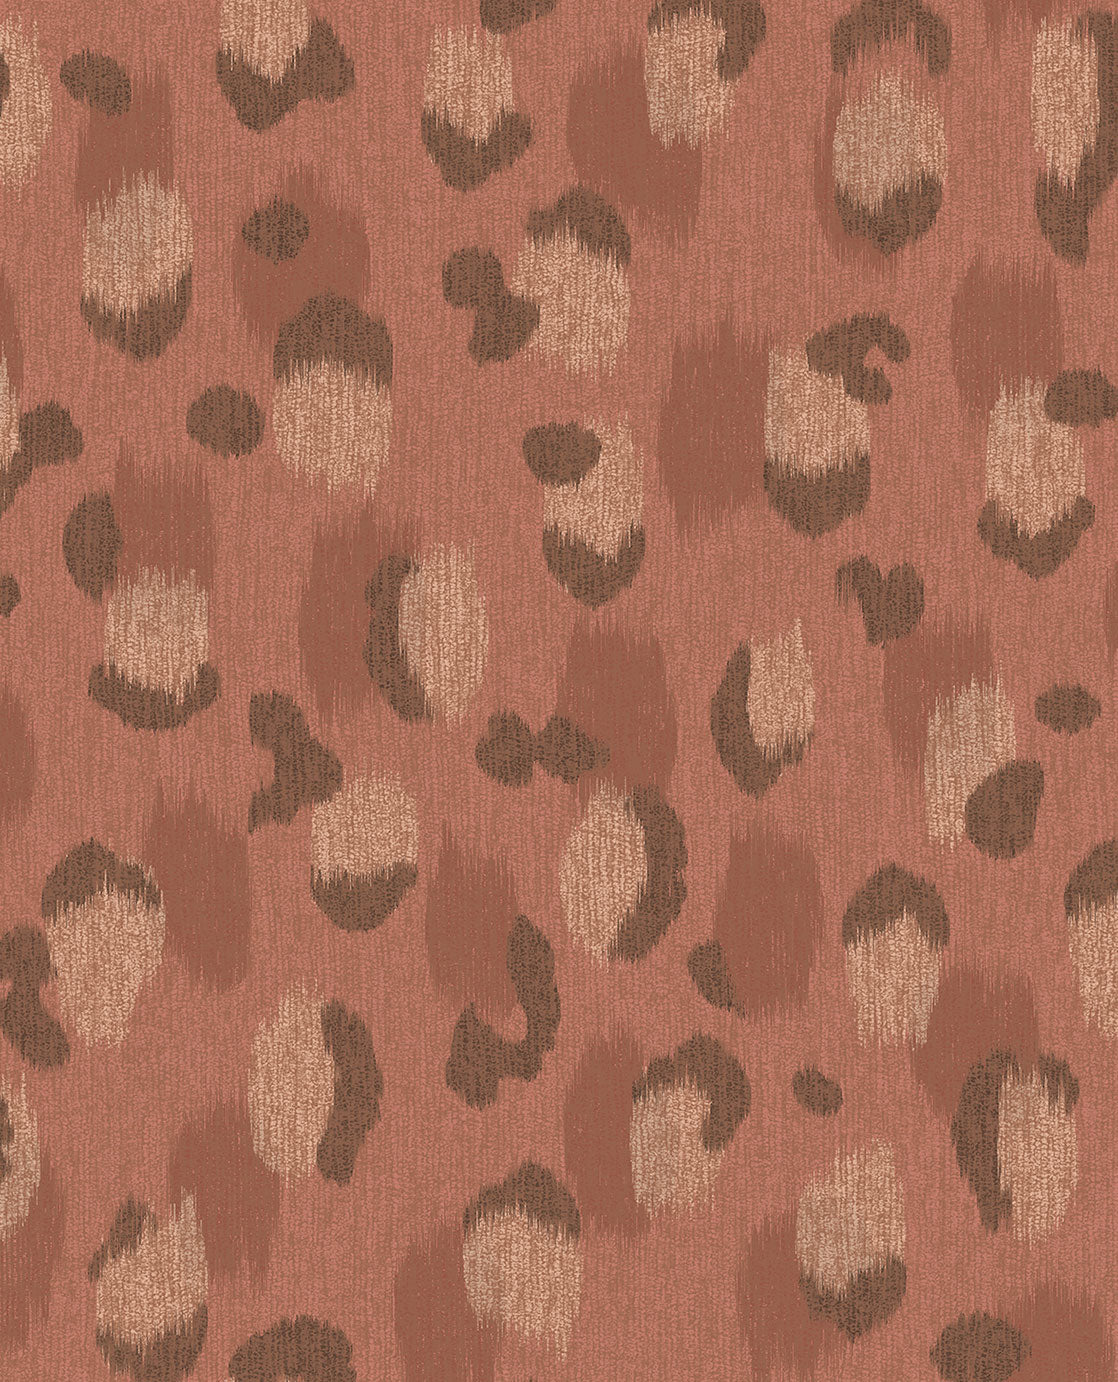 Skin Leopard Spots wallpaper